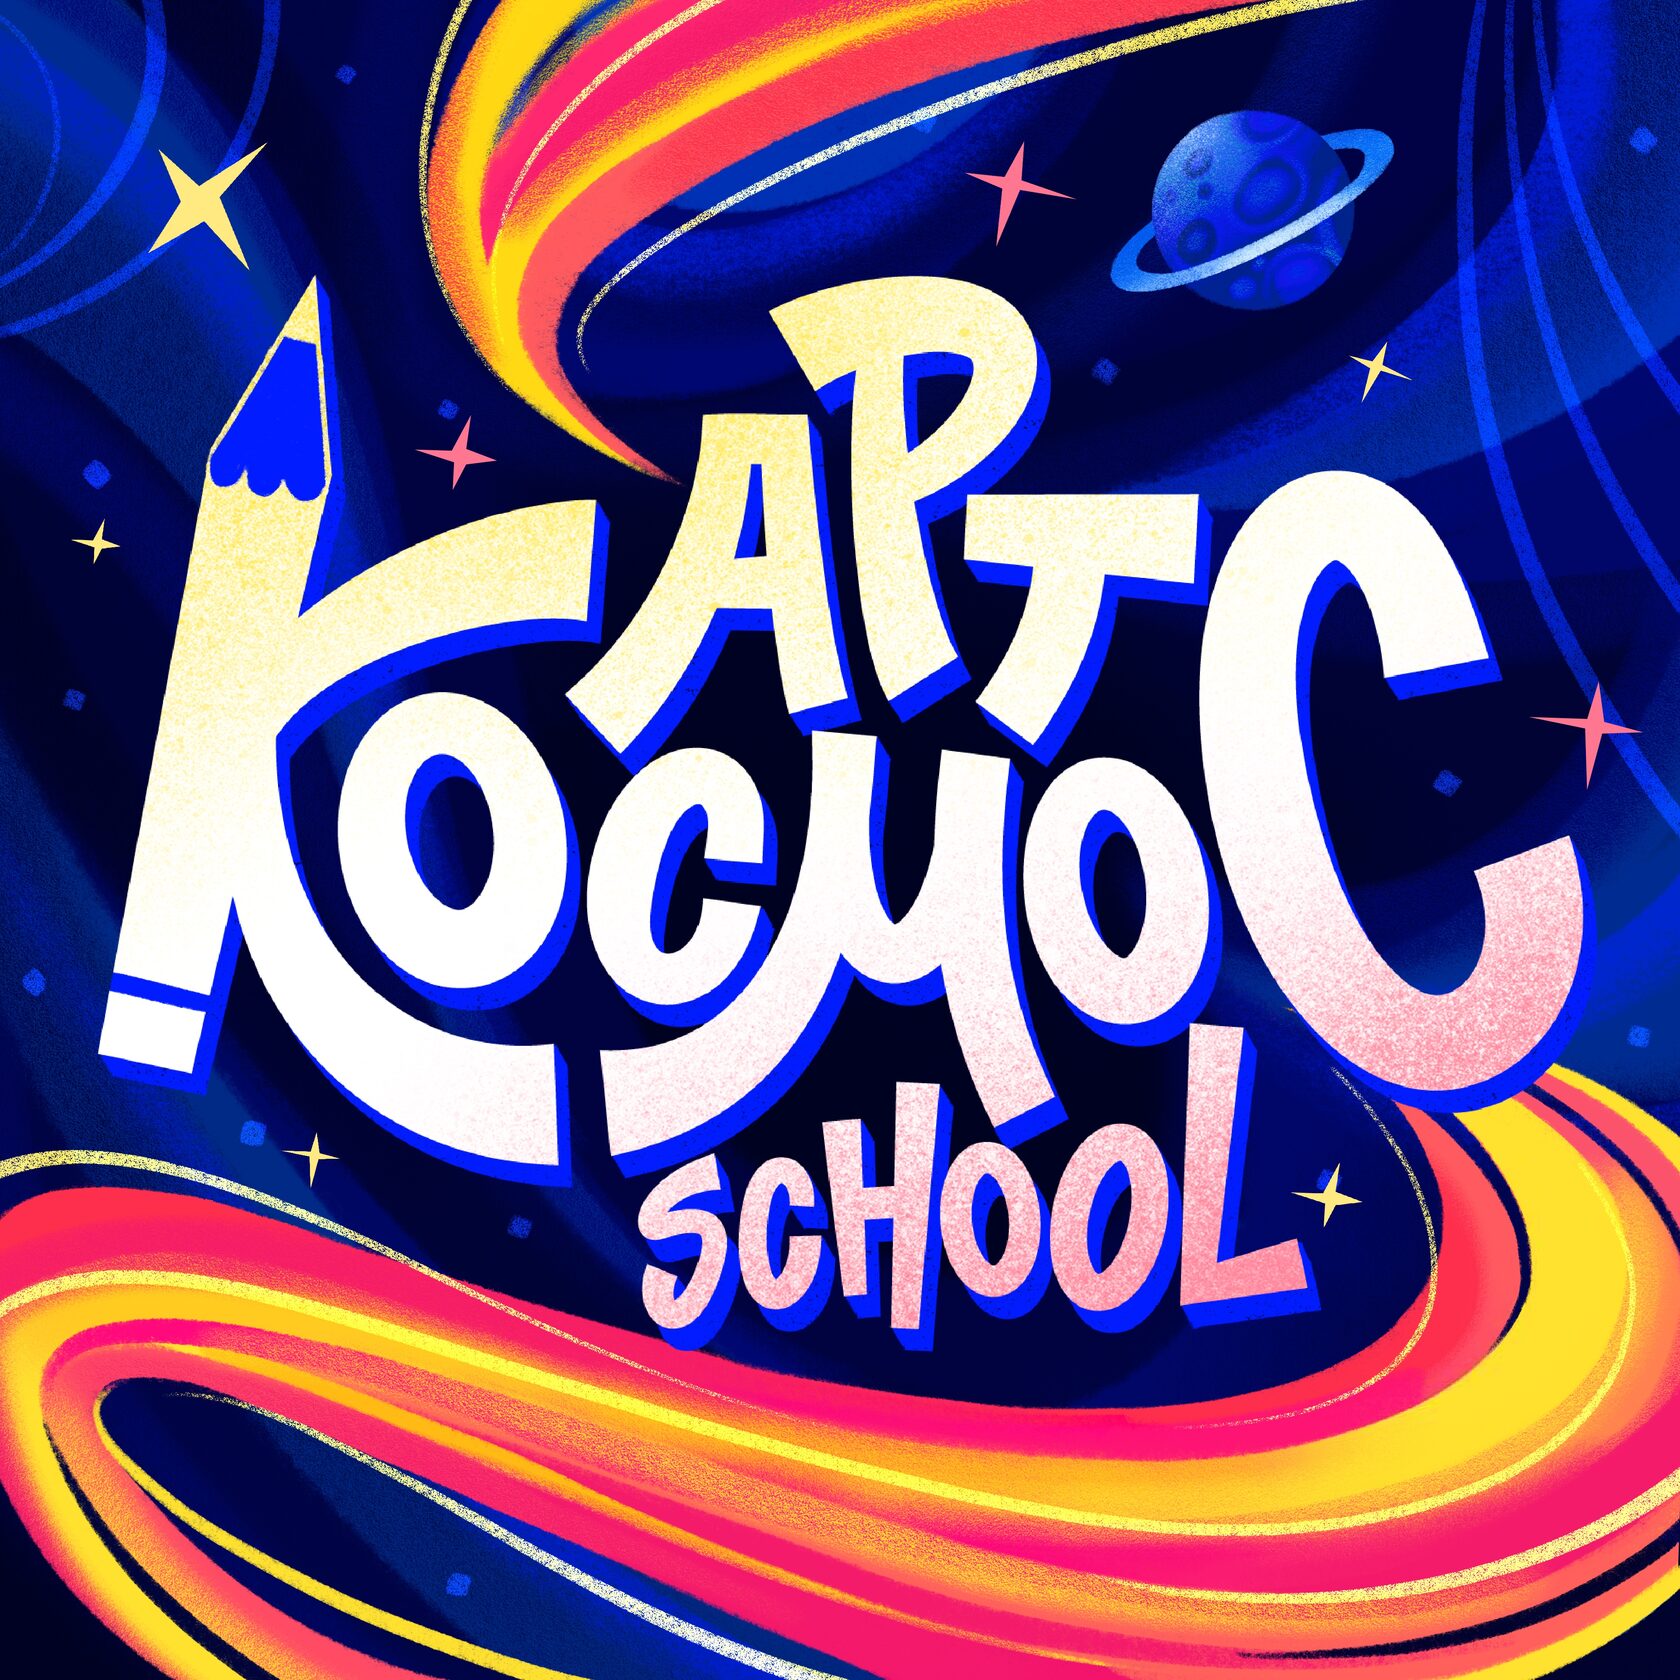 artcosmosschool.ru